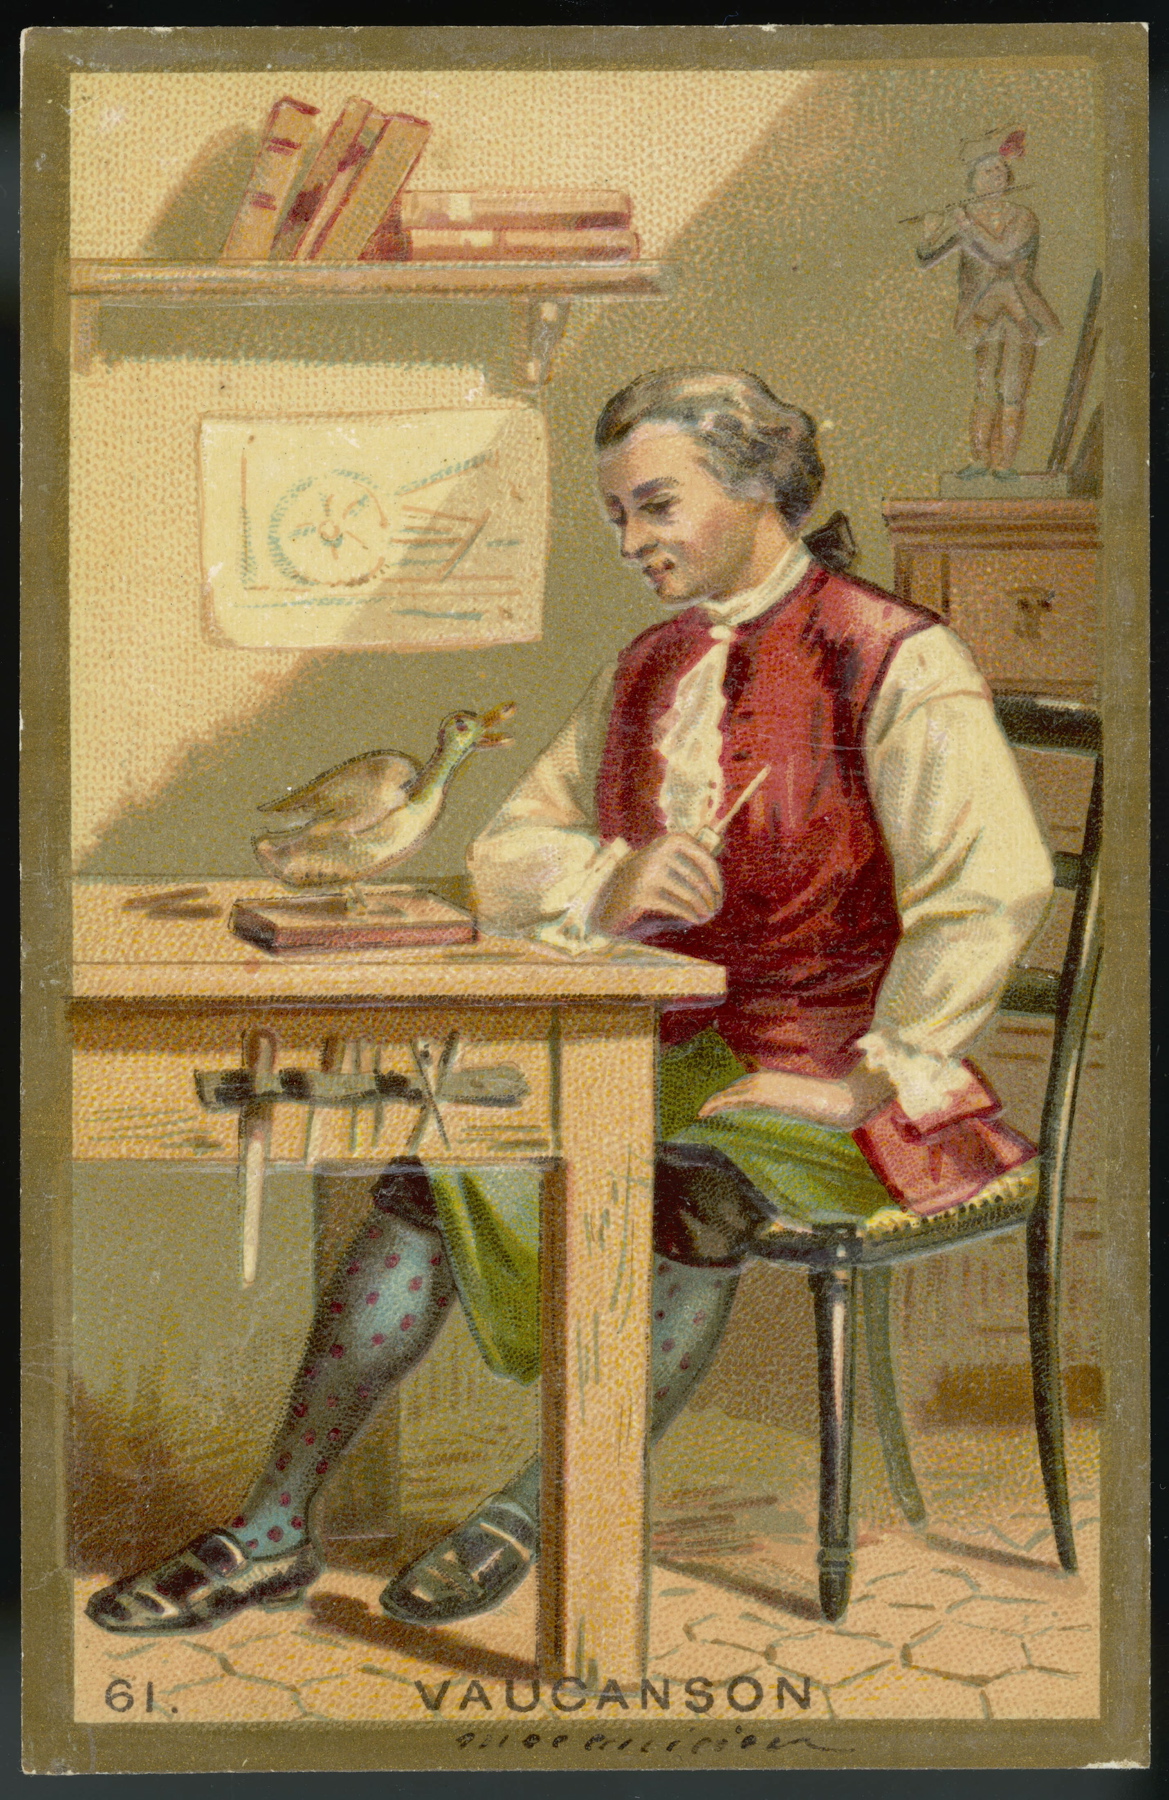 Jacques de Vaucanson (1709-1782), francuski wynalazca maszyn włókienniczych, także automatów, w tym słynnej kaczki.